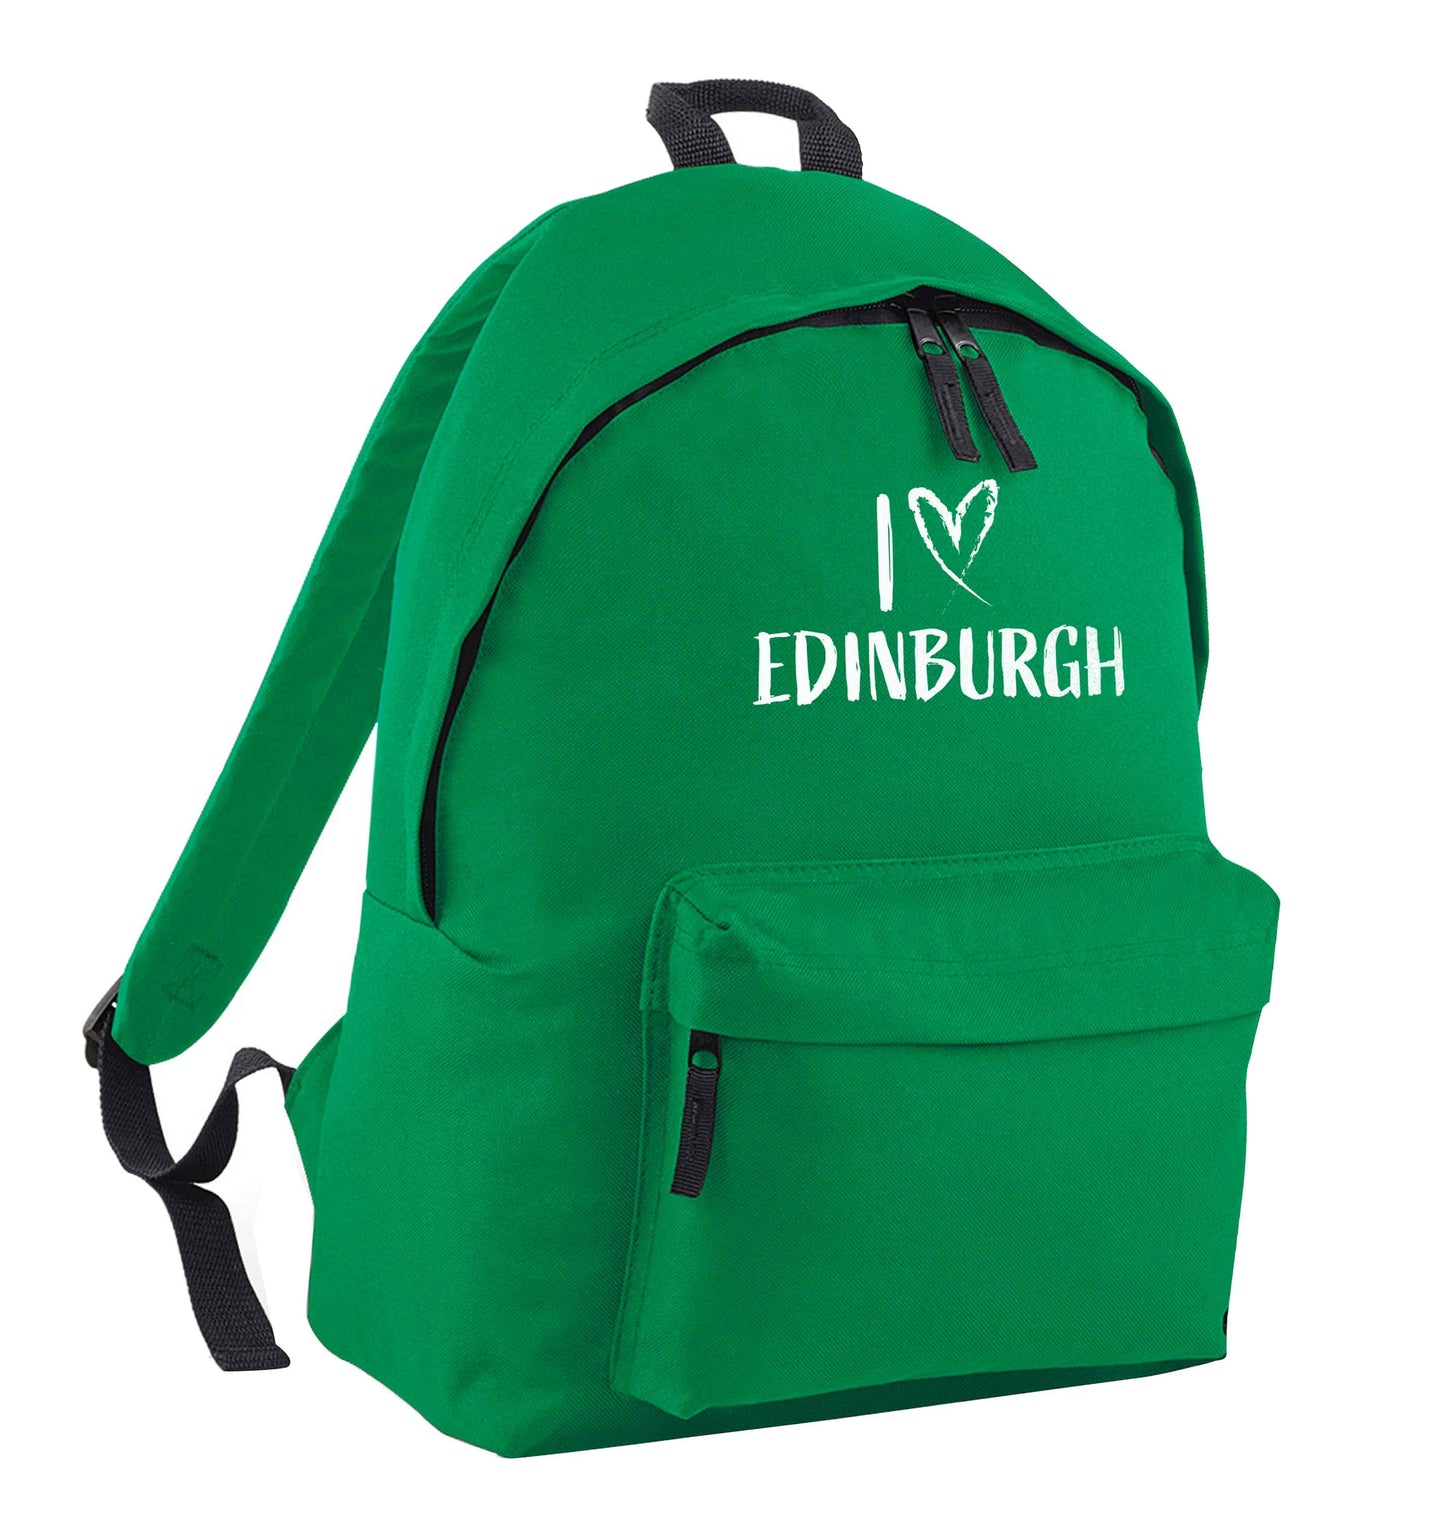 I love Edinburgh green adults backpack